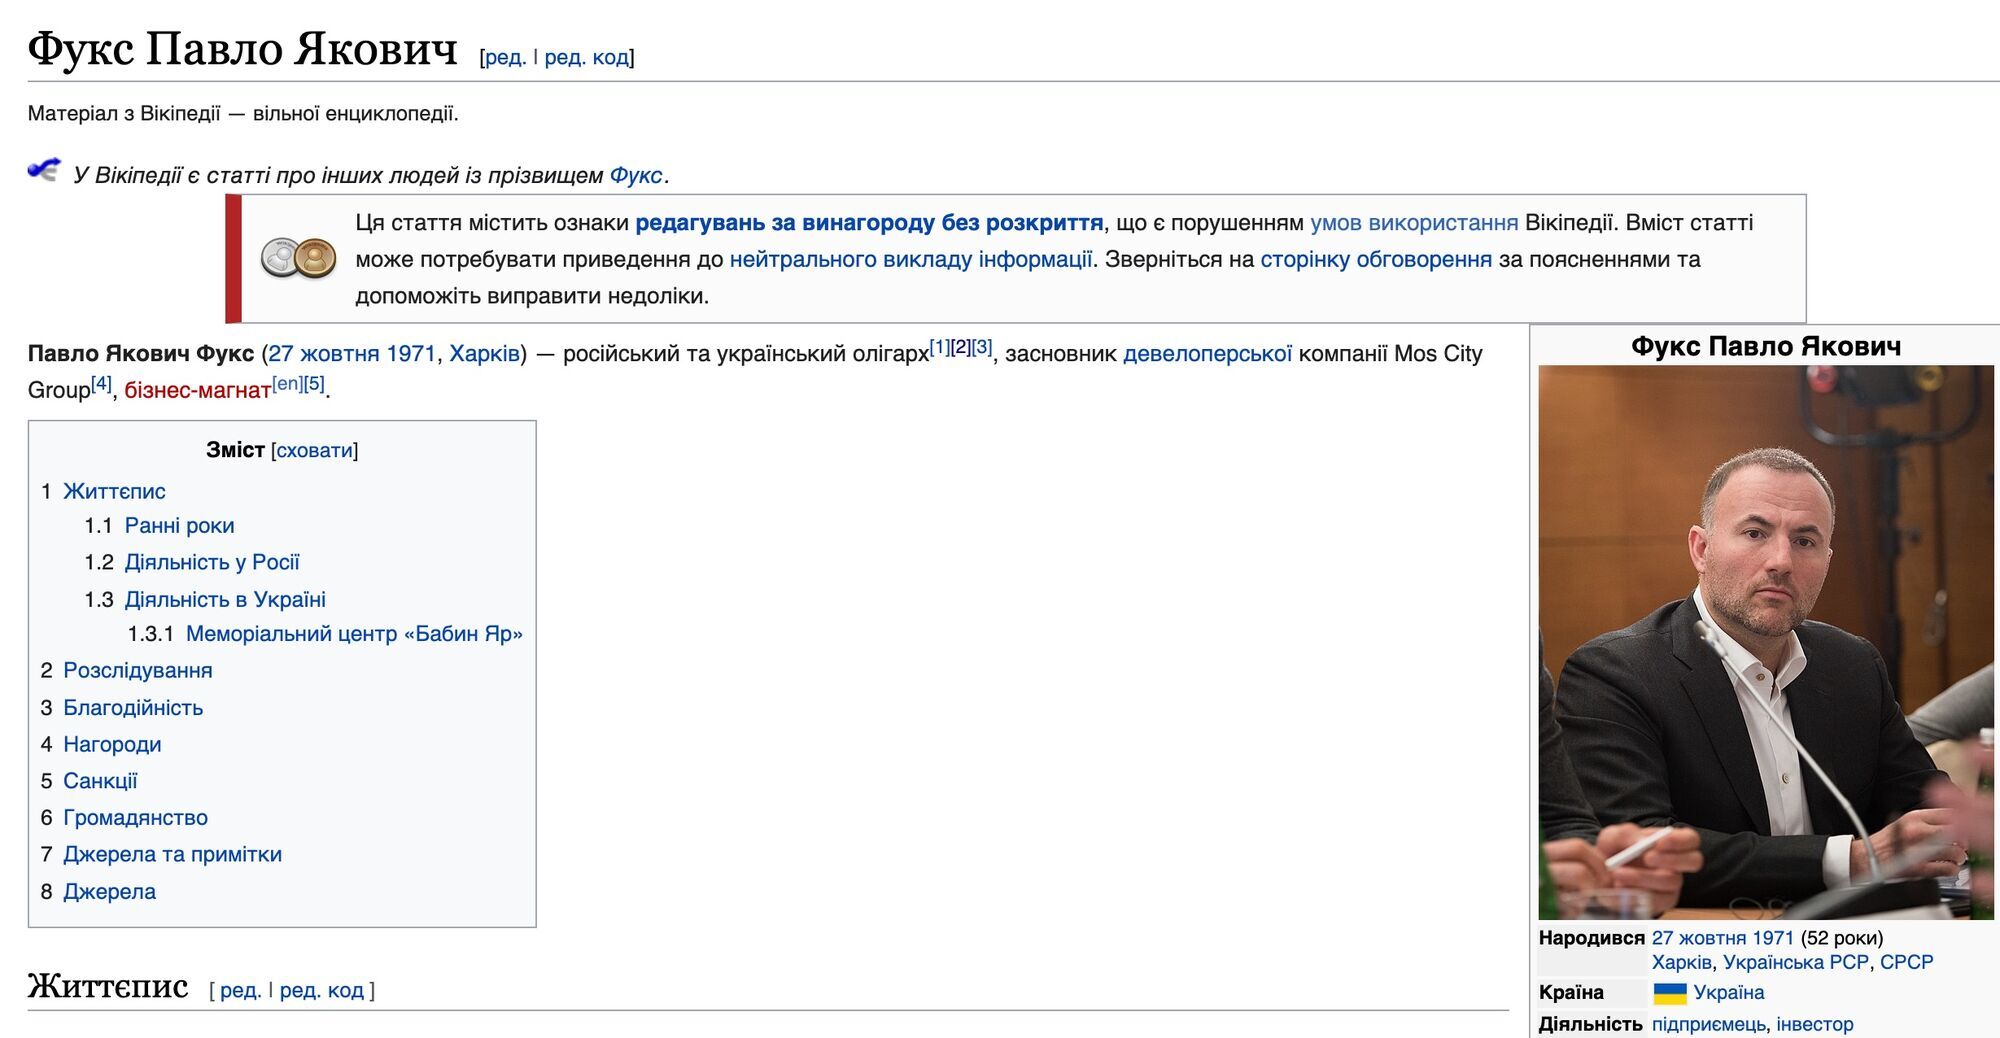 Представители Павла Фукса сослались на информацию, имеющуюся в Википедии